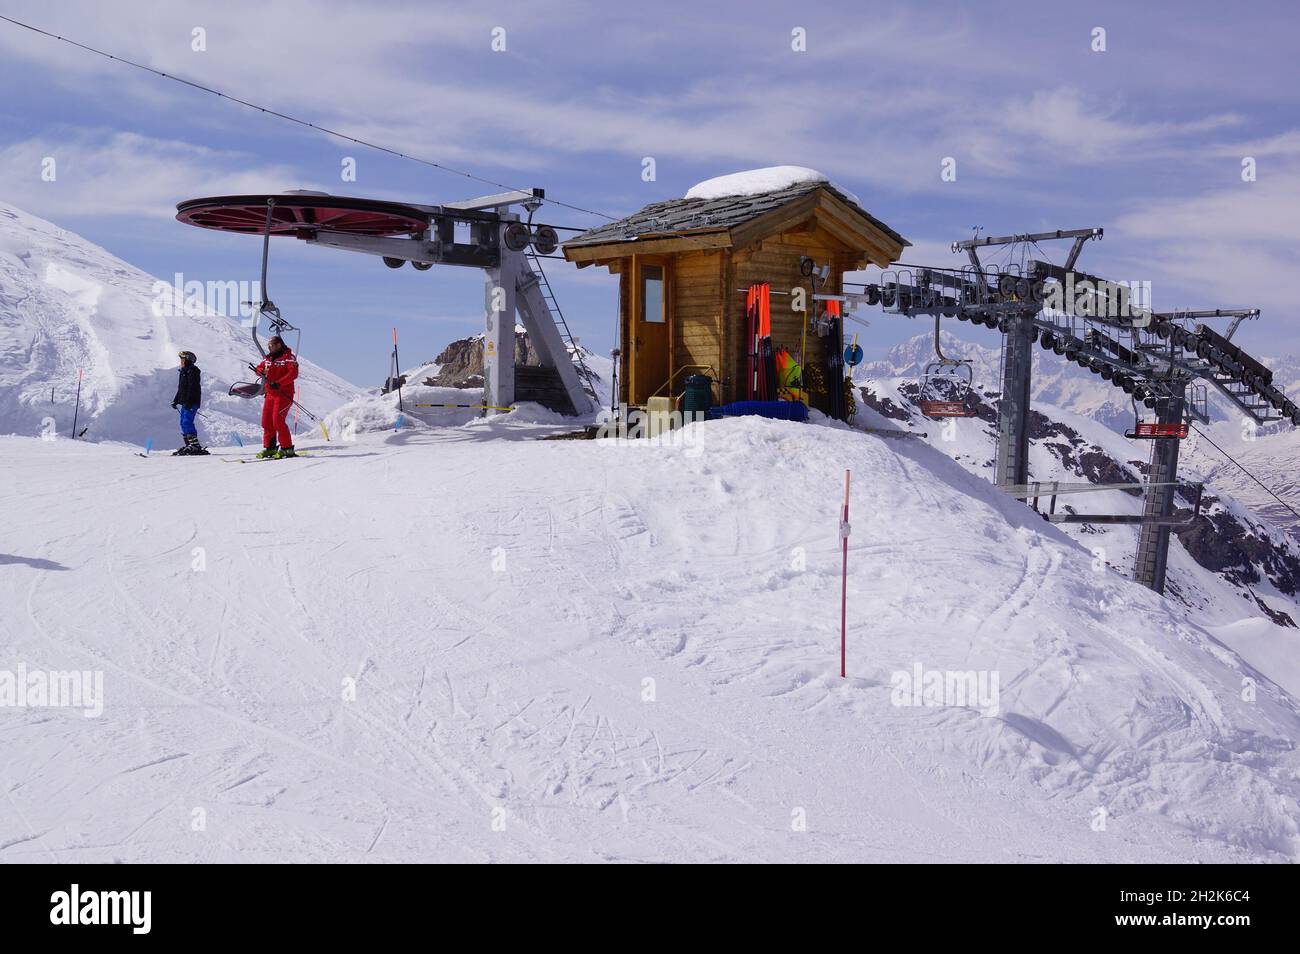 Pila, Valle d'Aosta (Italia): Due sciatori sono appena scese dalla seggiovia alla stazione superiore Foto Stock